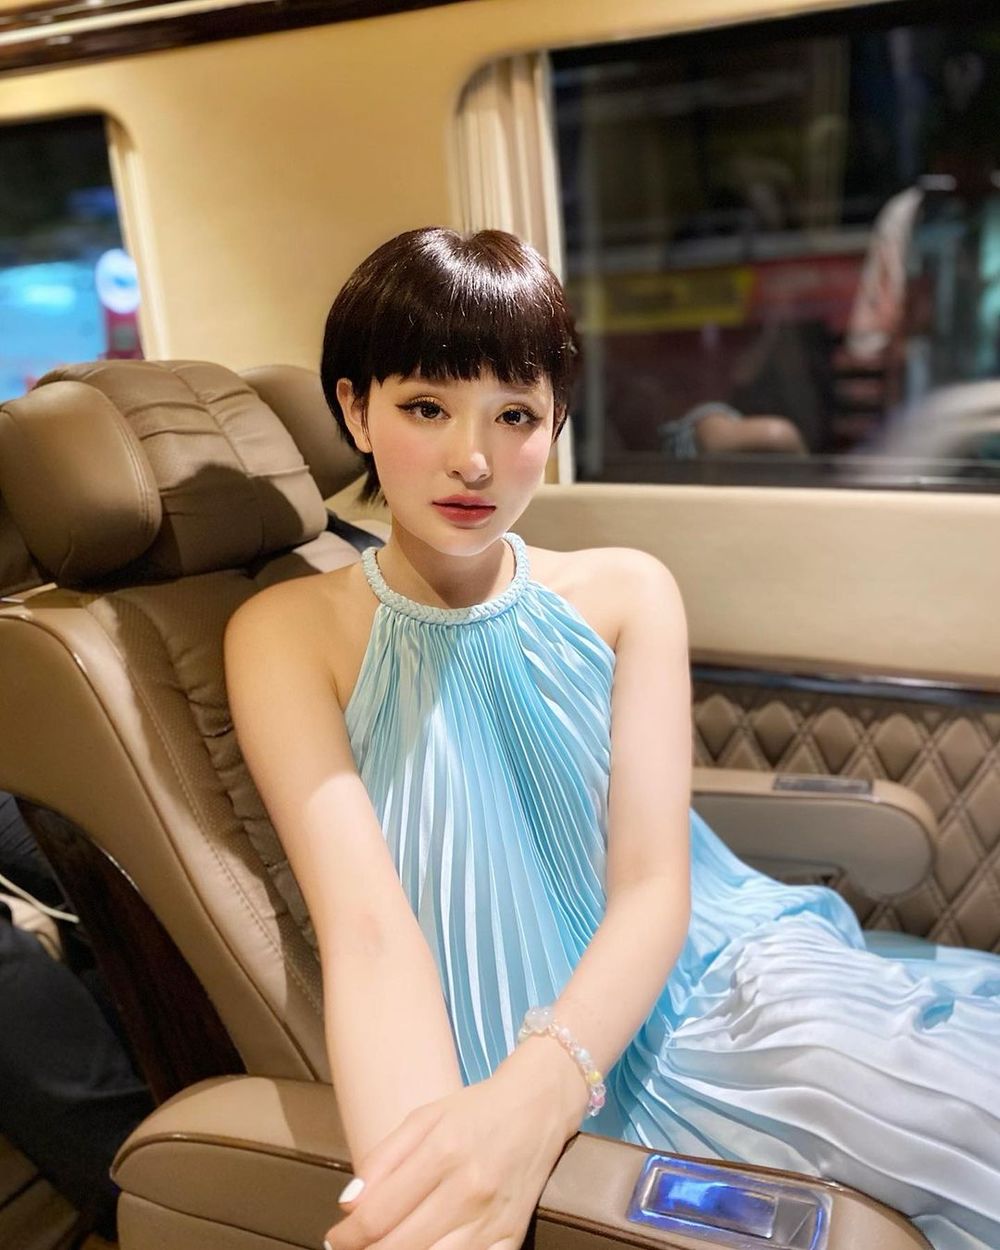 
Tóc tém vẫn là "đặc sản" của người đẹp gốc Đắk Lắk, trong các bức ảnh chụp trên xe sự sang chảnh của cô nàng được thể hiện rõ hơn bao giờ hết. (Ảnh: FBNV)